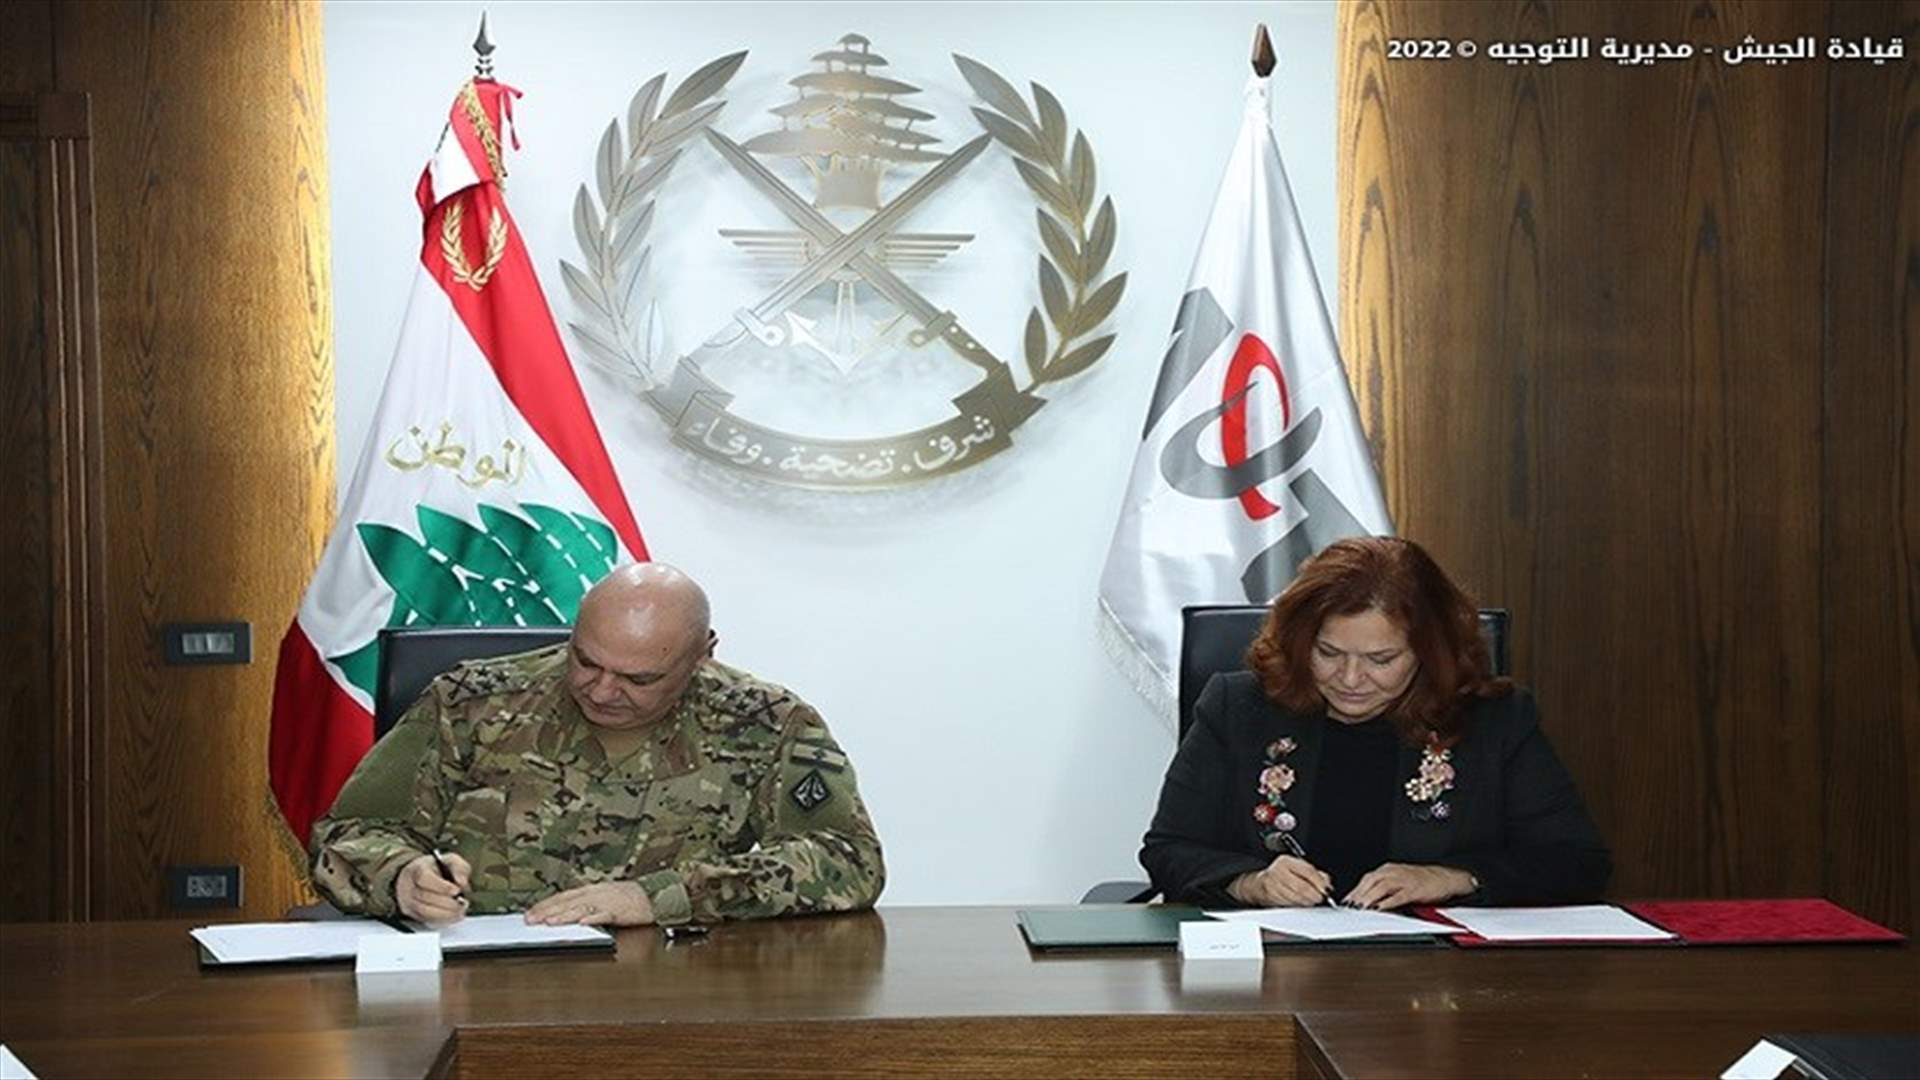 توقيع اتفاقية تعاون بين الجيش اللبناني والجامعة الأميركية للتكنولوجيا (AUT)